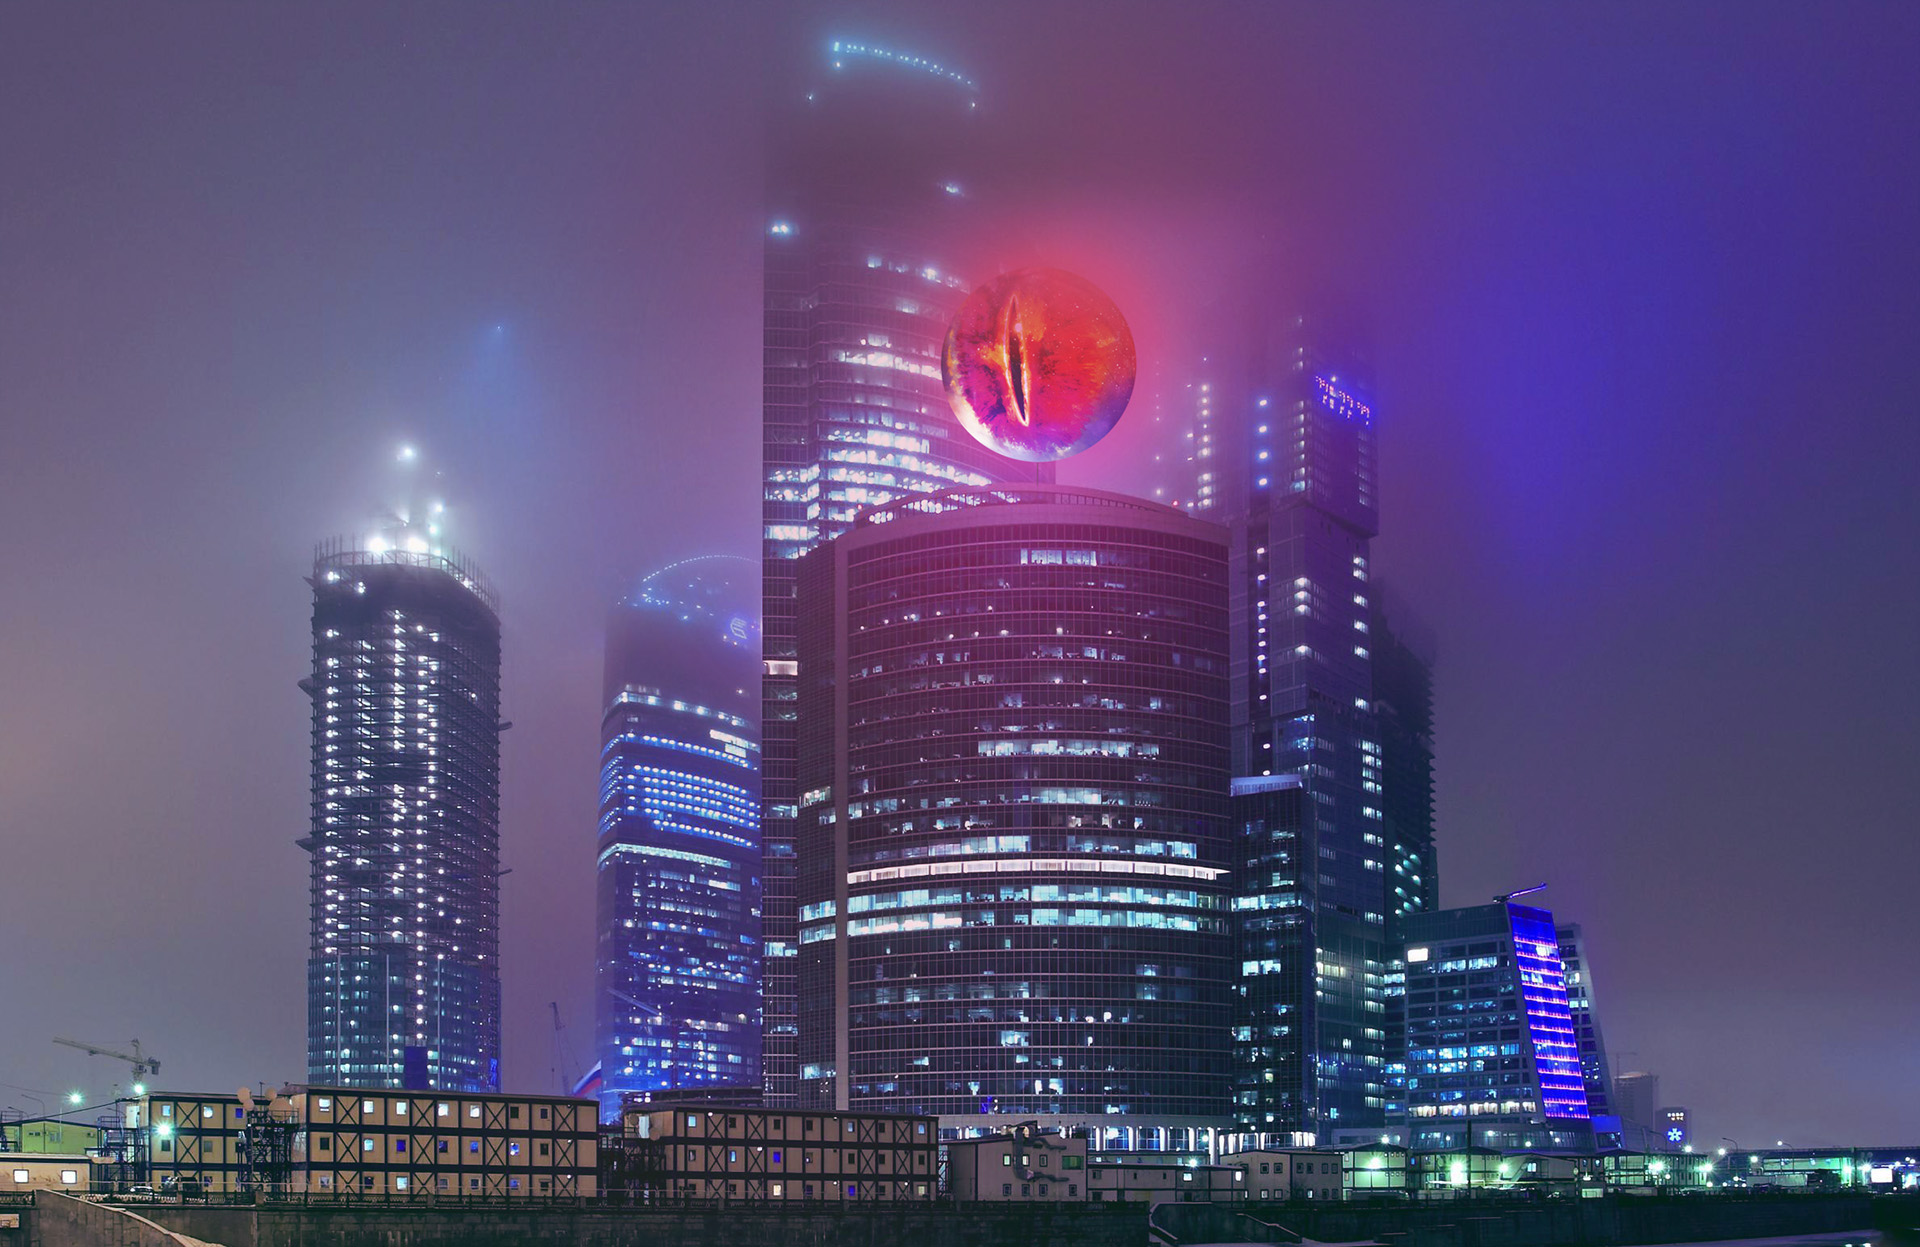 Око Саурона на башне Москва-Сити